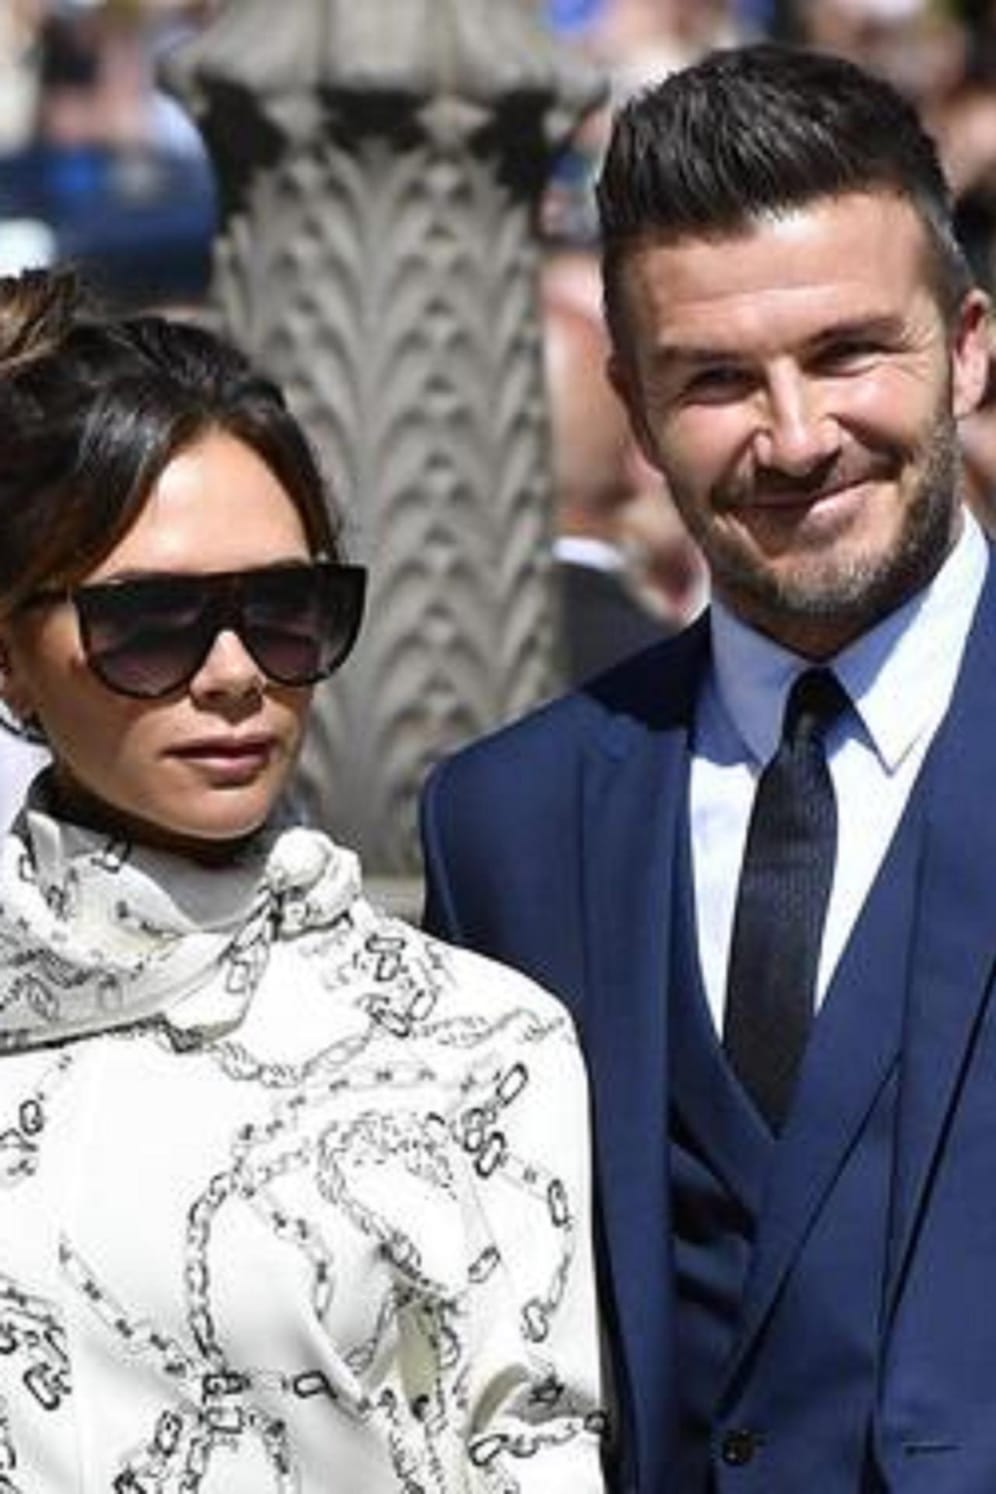 Jubiläum: Im Juli 2019 feiern Victoria und David Beckham ihren 20. Hochzeitstag.